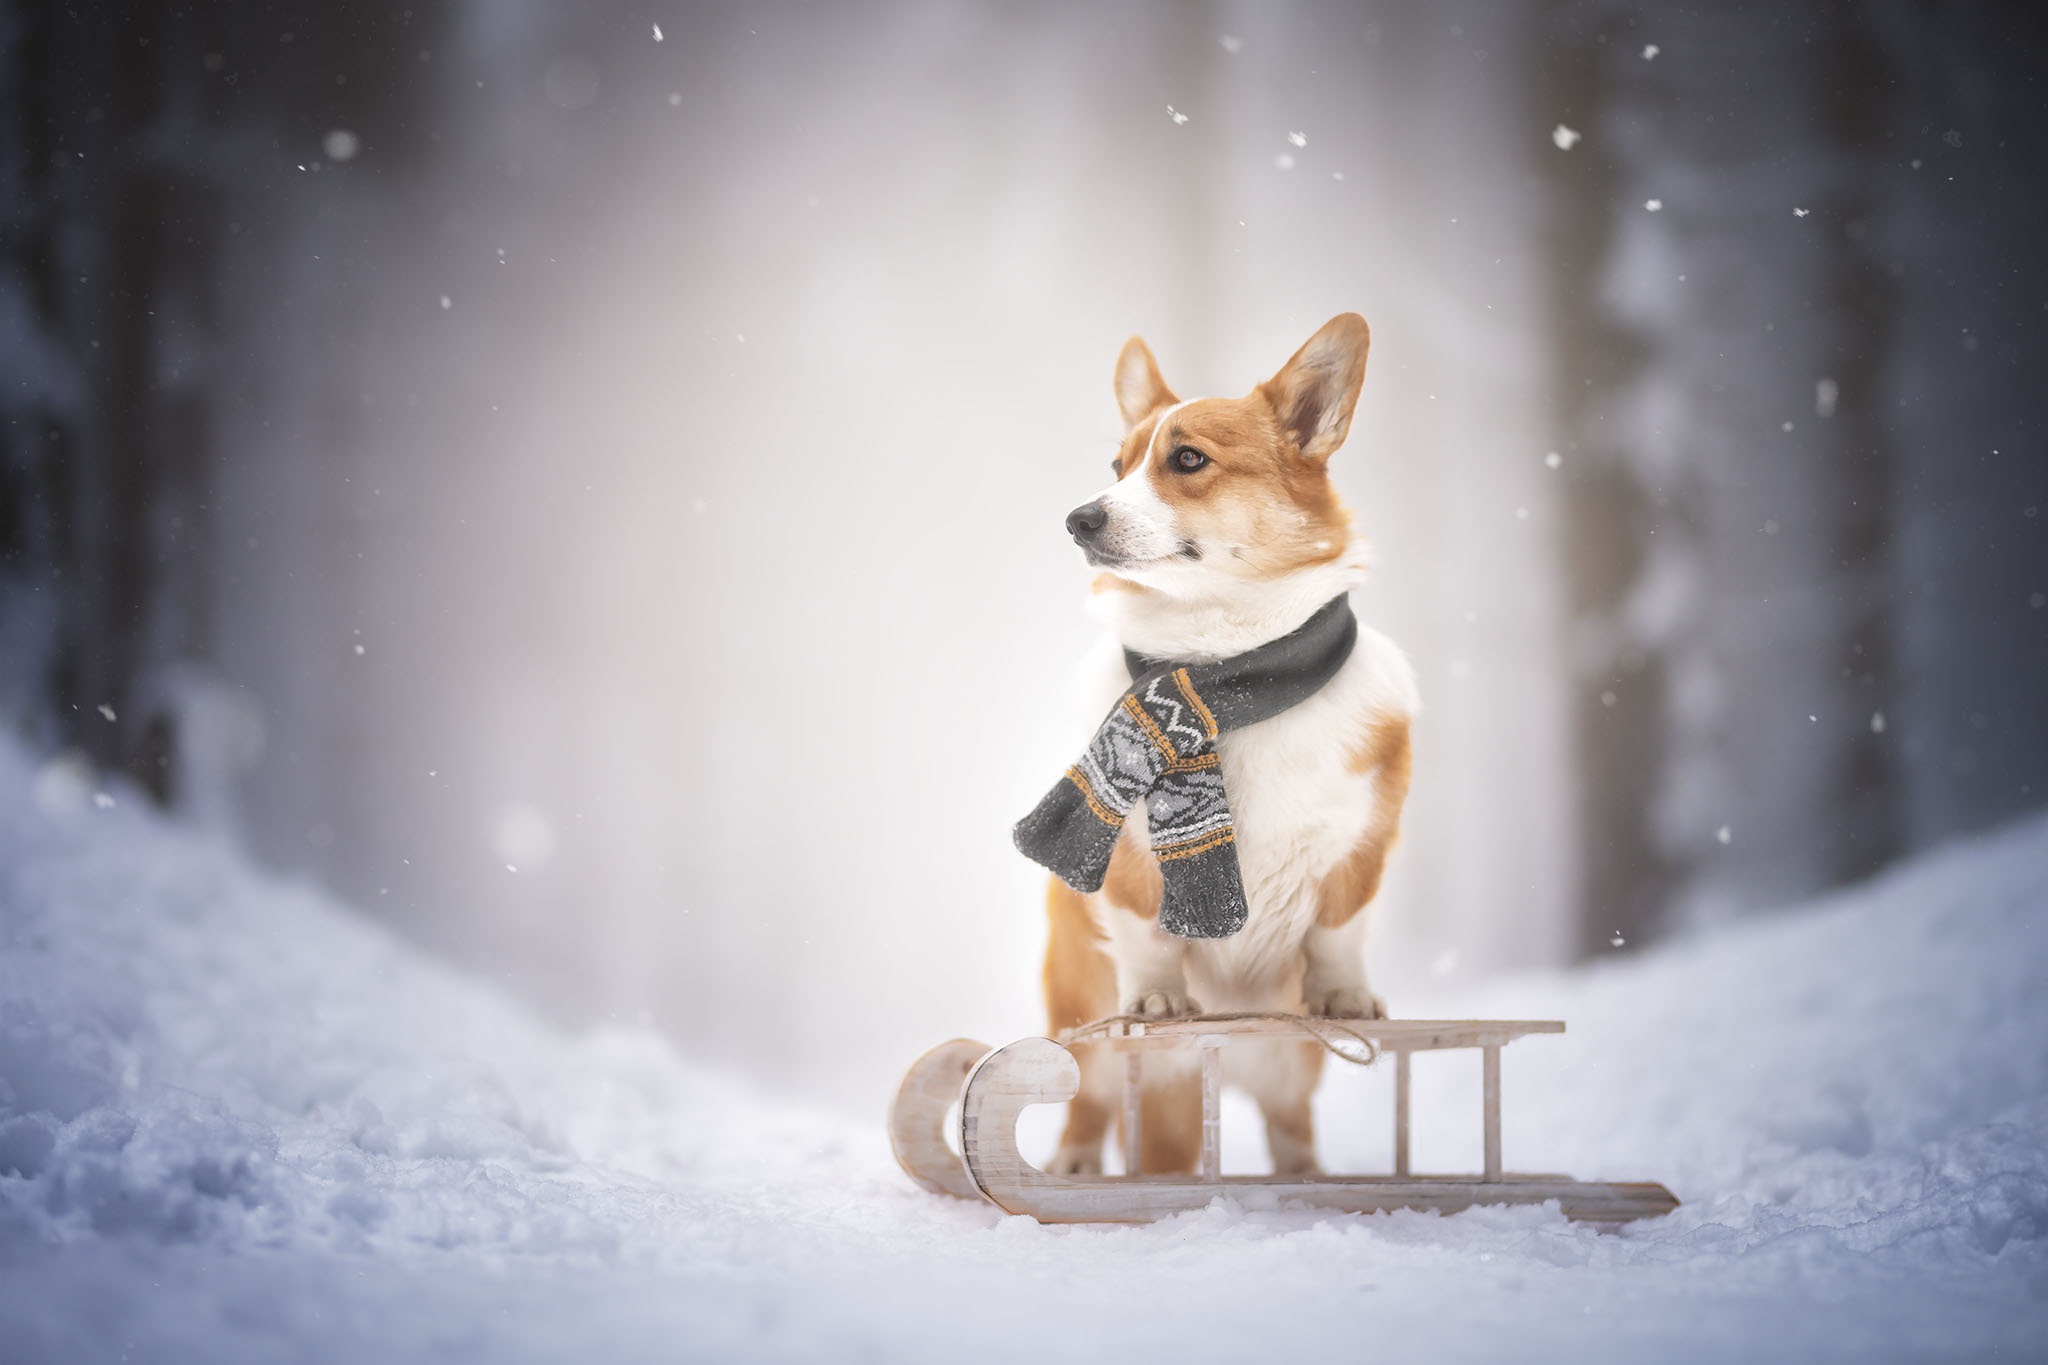 Скачать обои бесплатно Животные, Зима, Собаки, Снег, Собака, Корги картинка на рабочий стол ПК